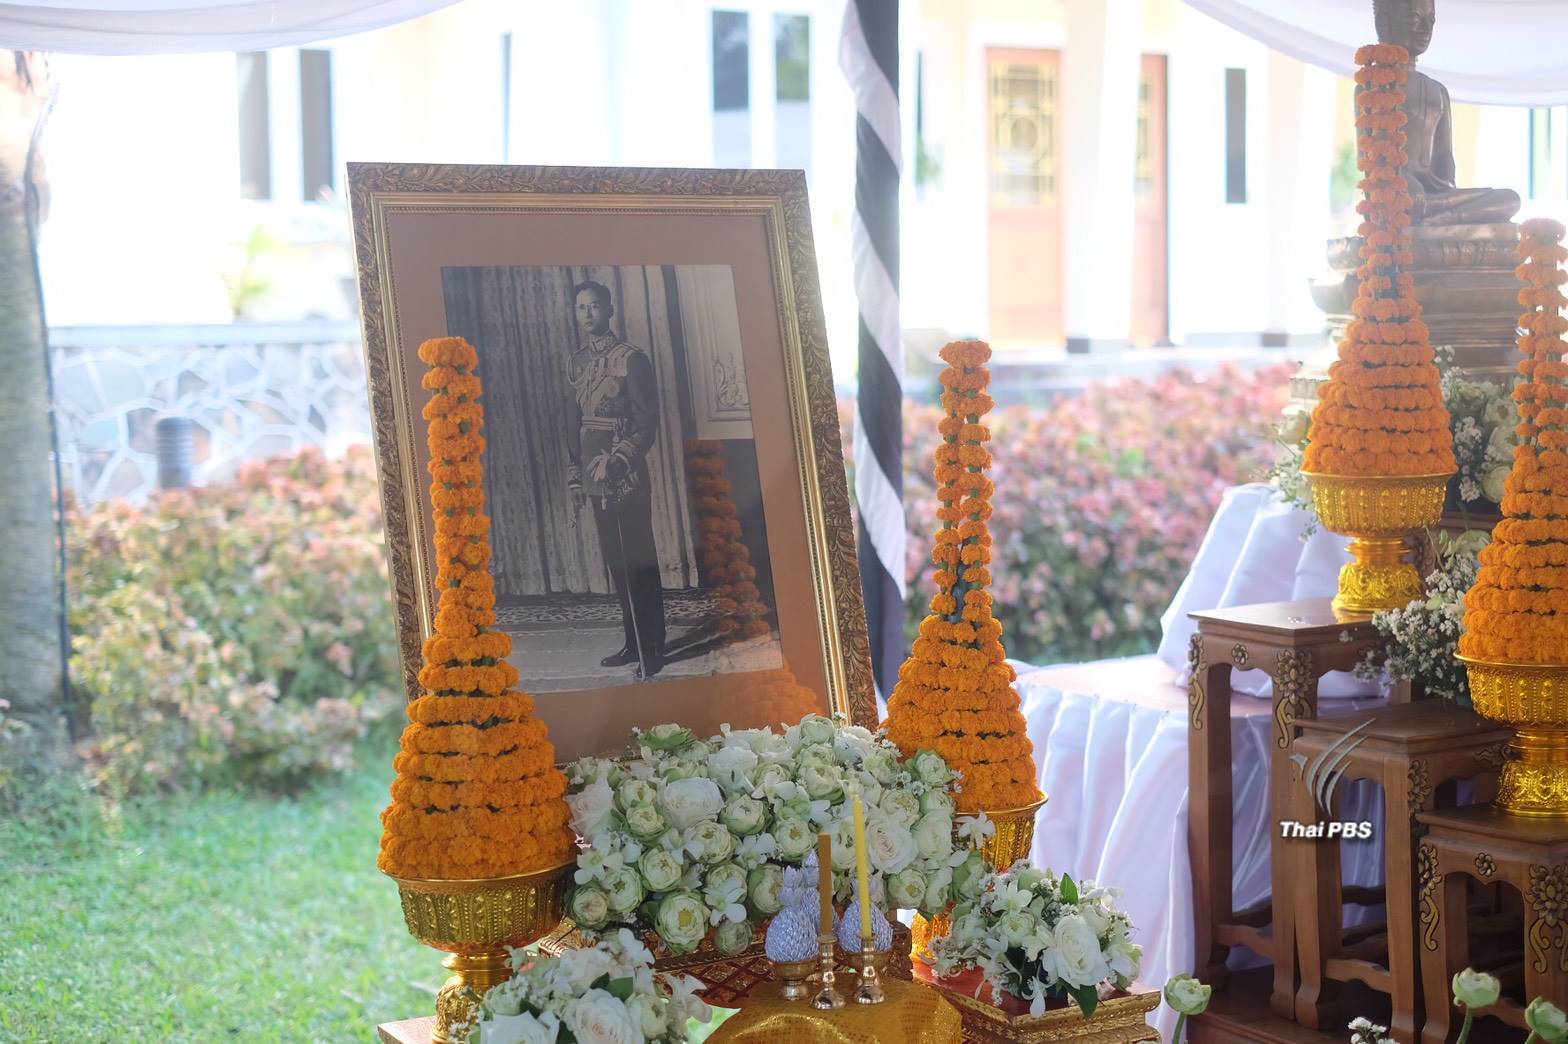 สถานเอกอัครราชทูตไทยประจำประเทศลาวจัดพิธีบำเพ็ญกุศล "พระเจ้ามหาชีวิต"